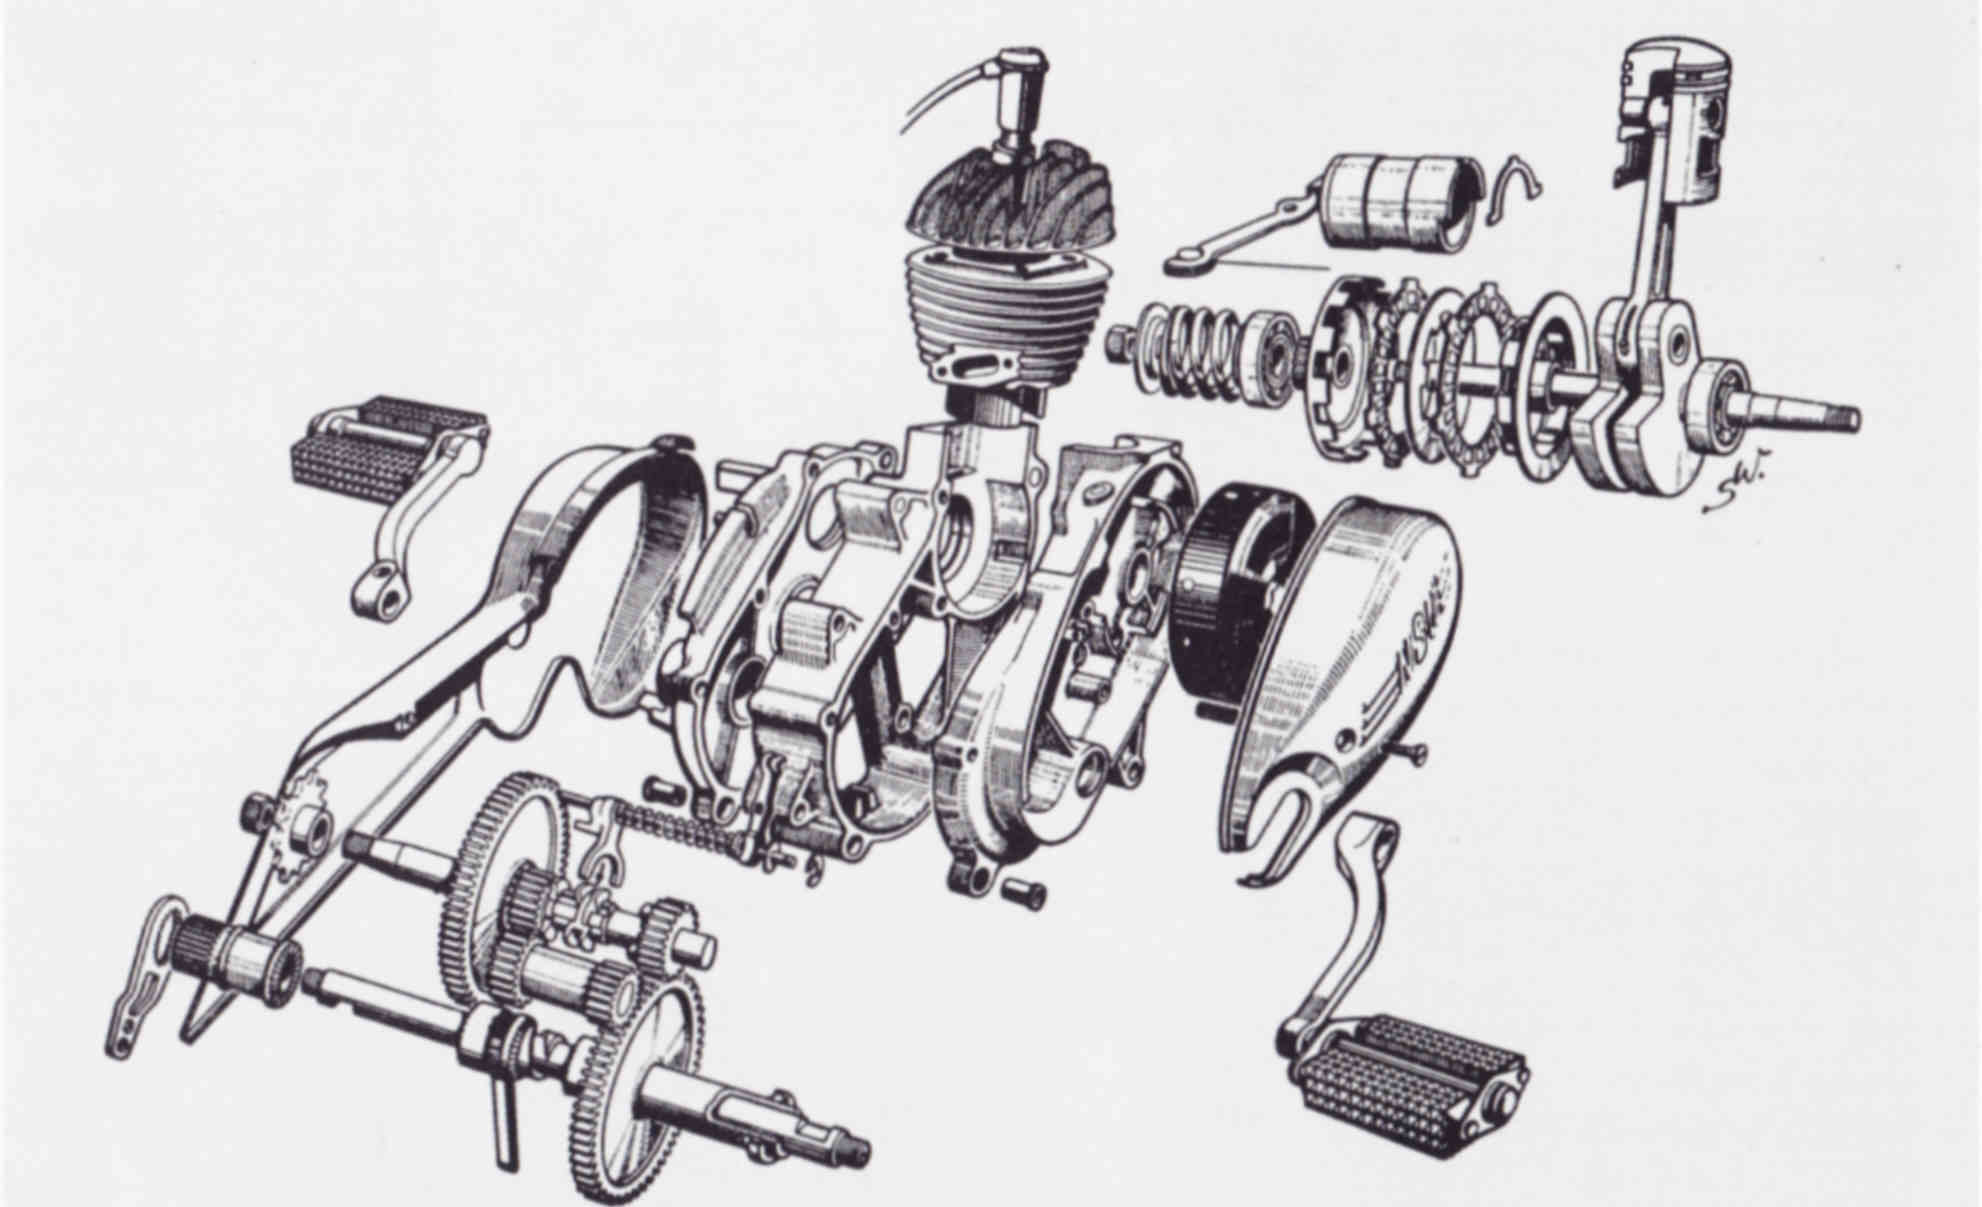 NSU Quickly motor 1953, teknisk tegning